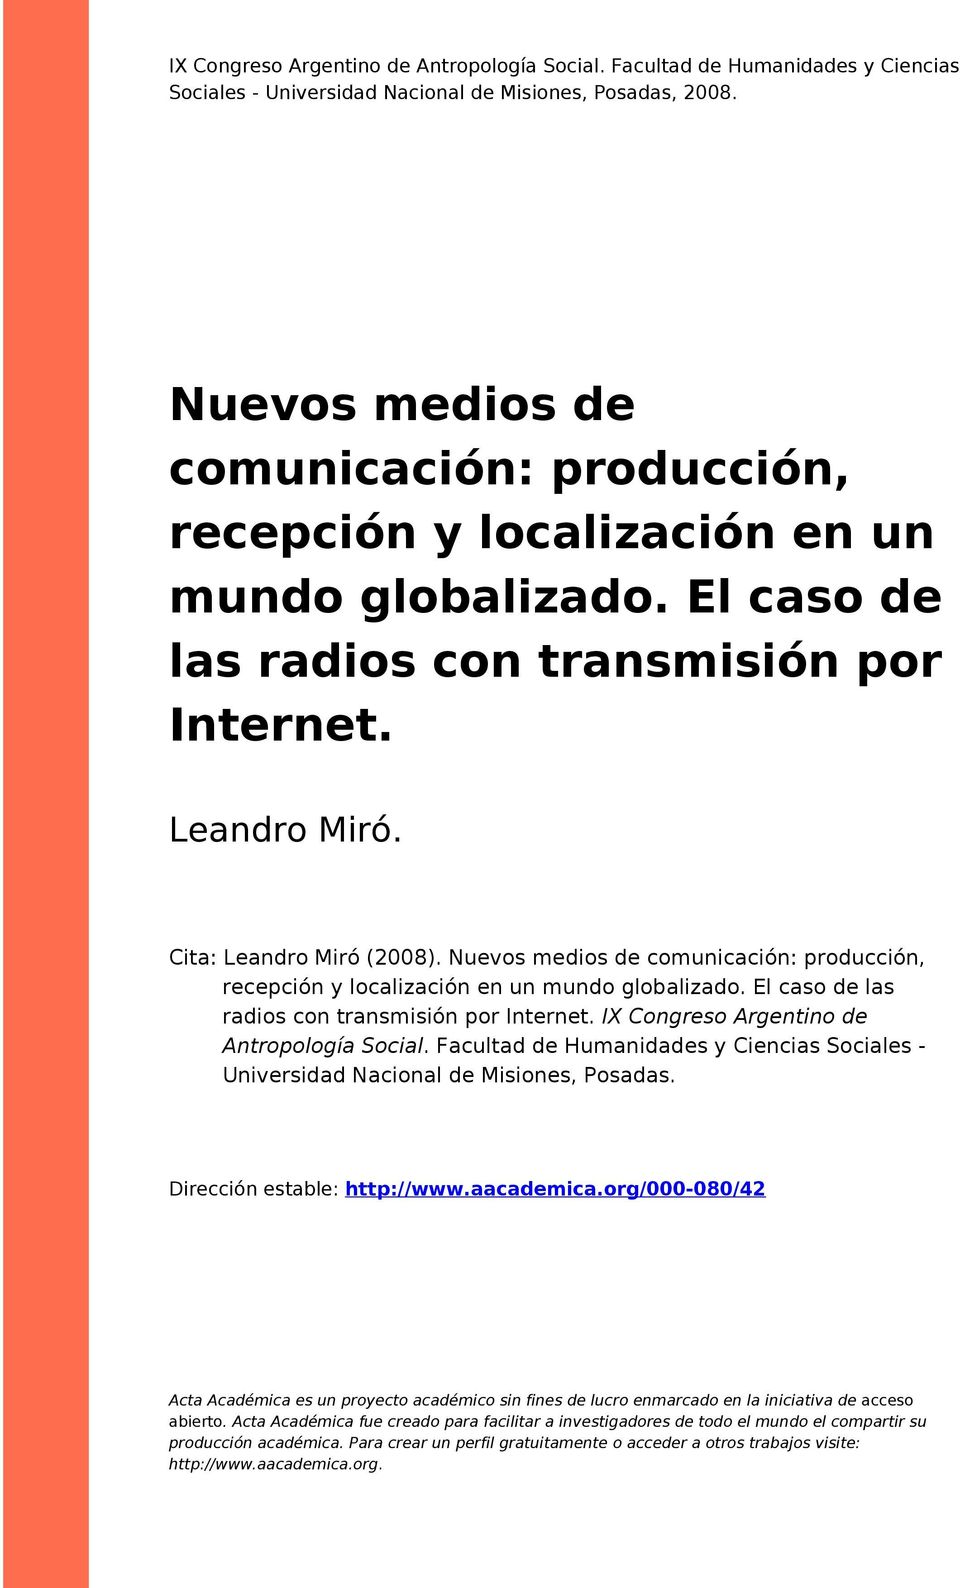 Nuevos medios de comunicación: producción, recepción y localización en un mundo globalizado. El caso de las radios con transmisión por Internet. IX Congreso Argentino de Antropología Social.